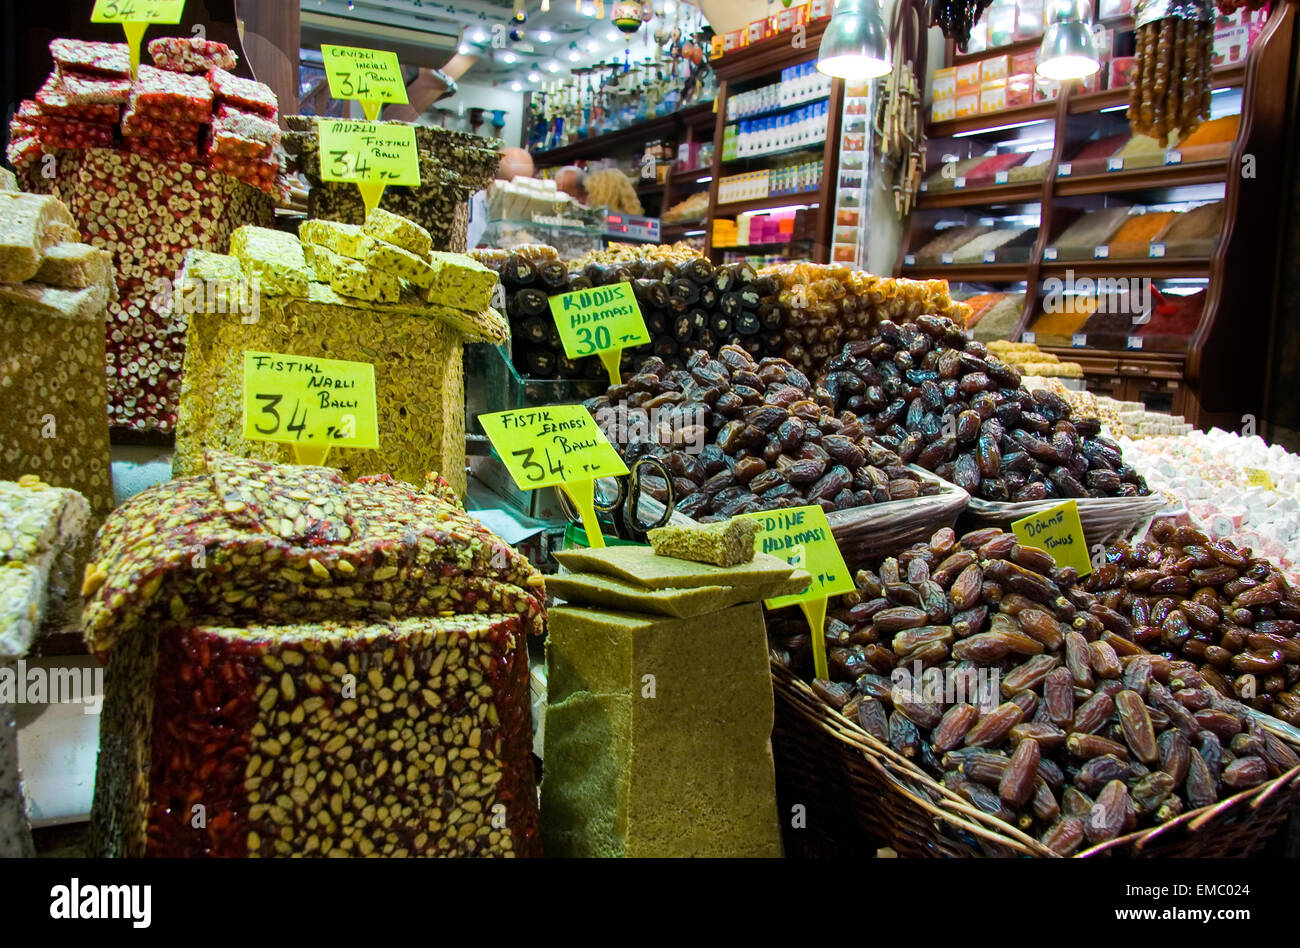 Montrant des sucreries turques, les fruits séchés et les noix dans un décrochage dans le marché aux épices d'Istanbul Banque D'Images